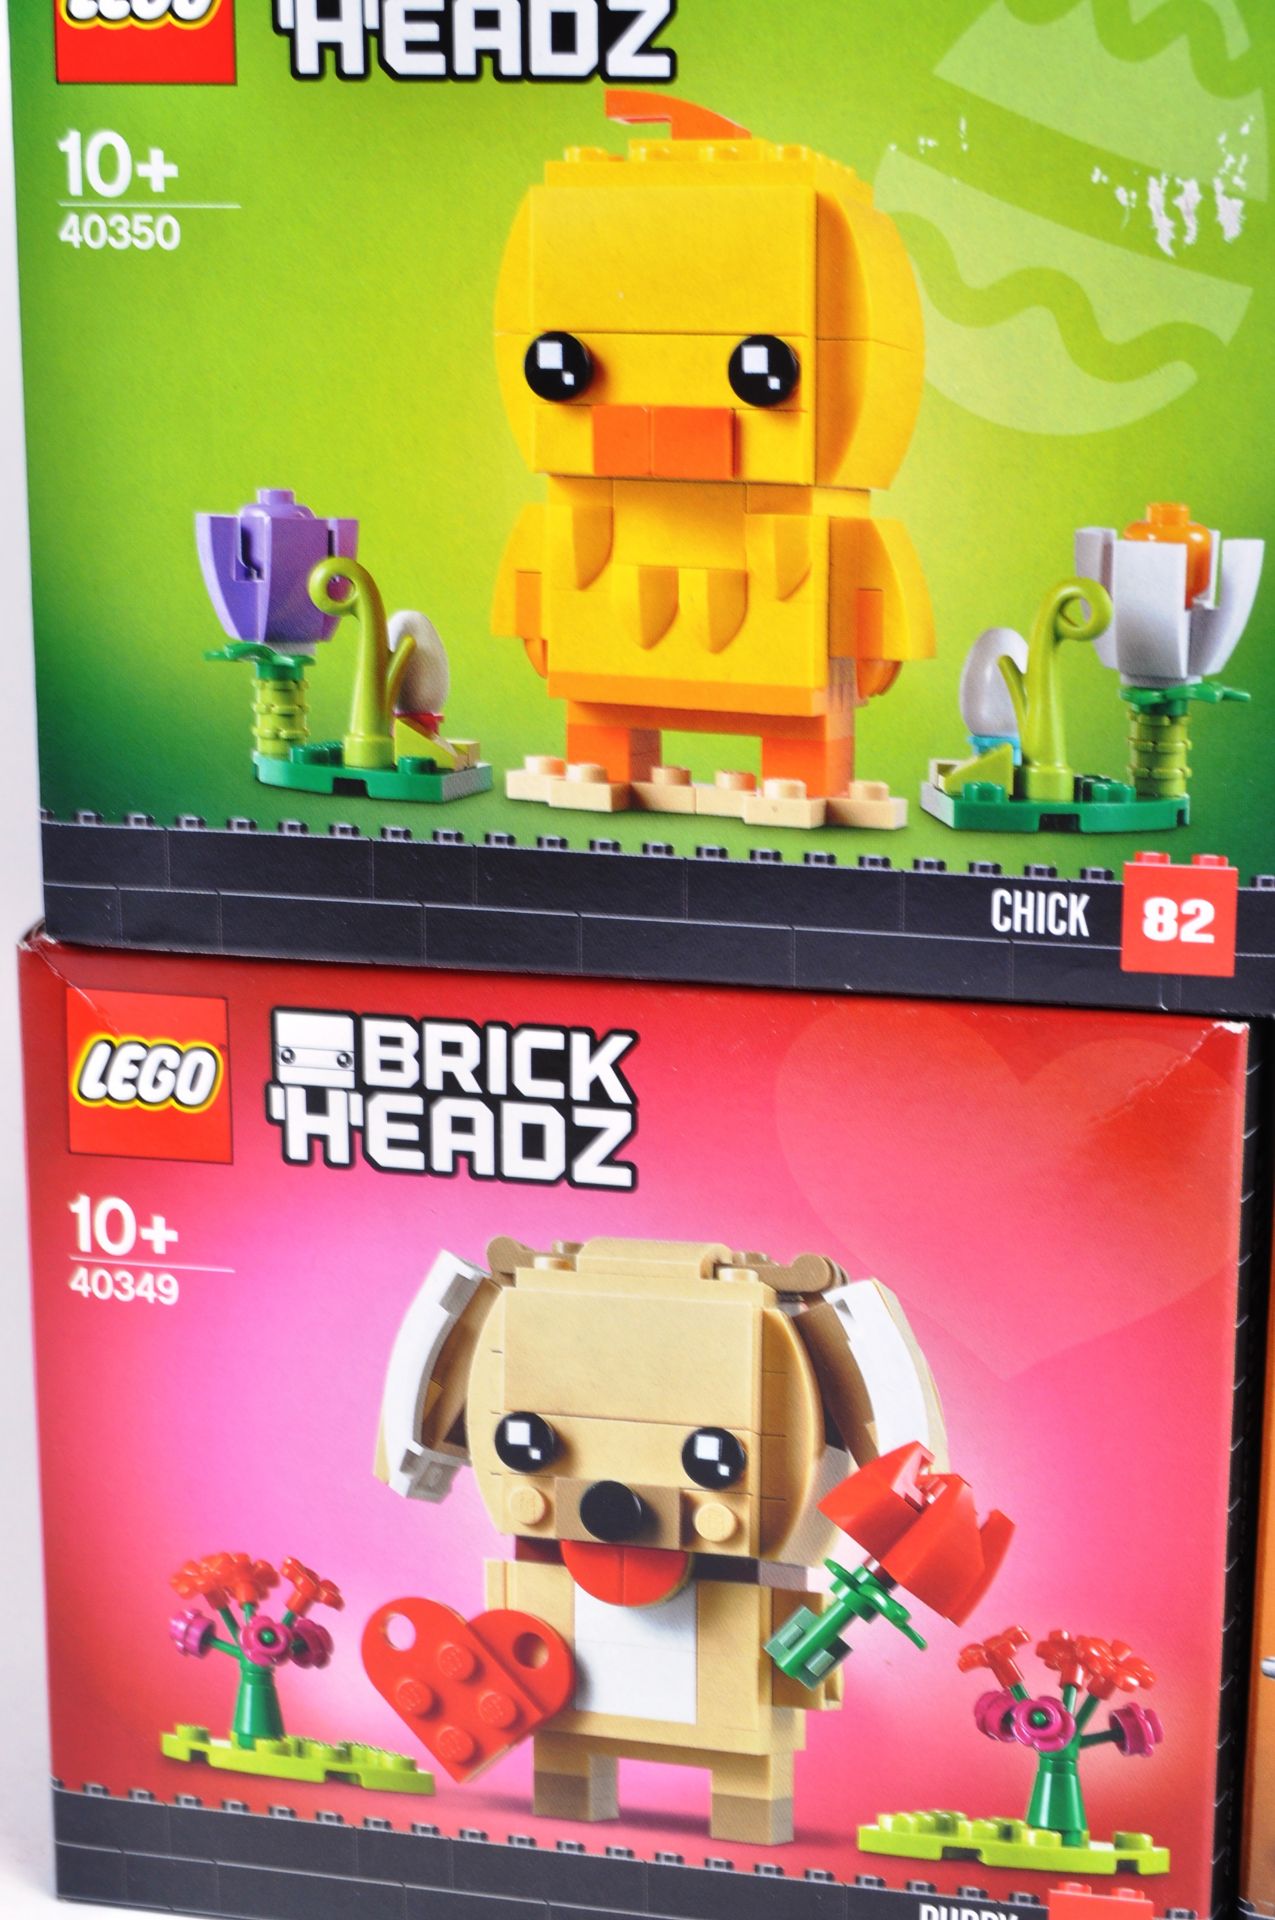 LEGO SETS - BRICK HEADZ - Image 4 of 6